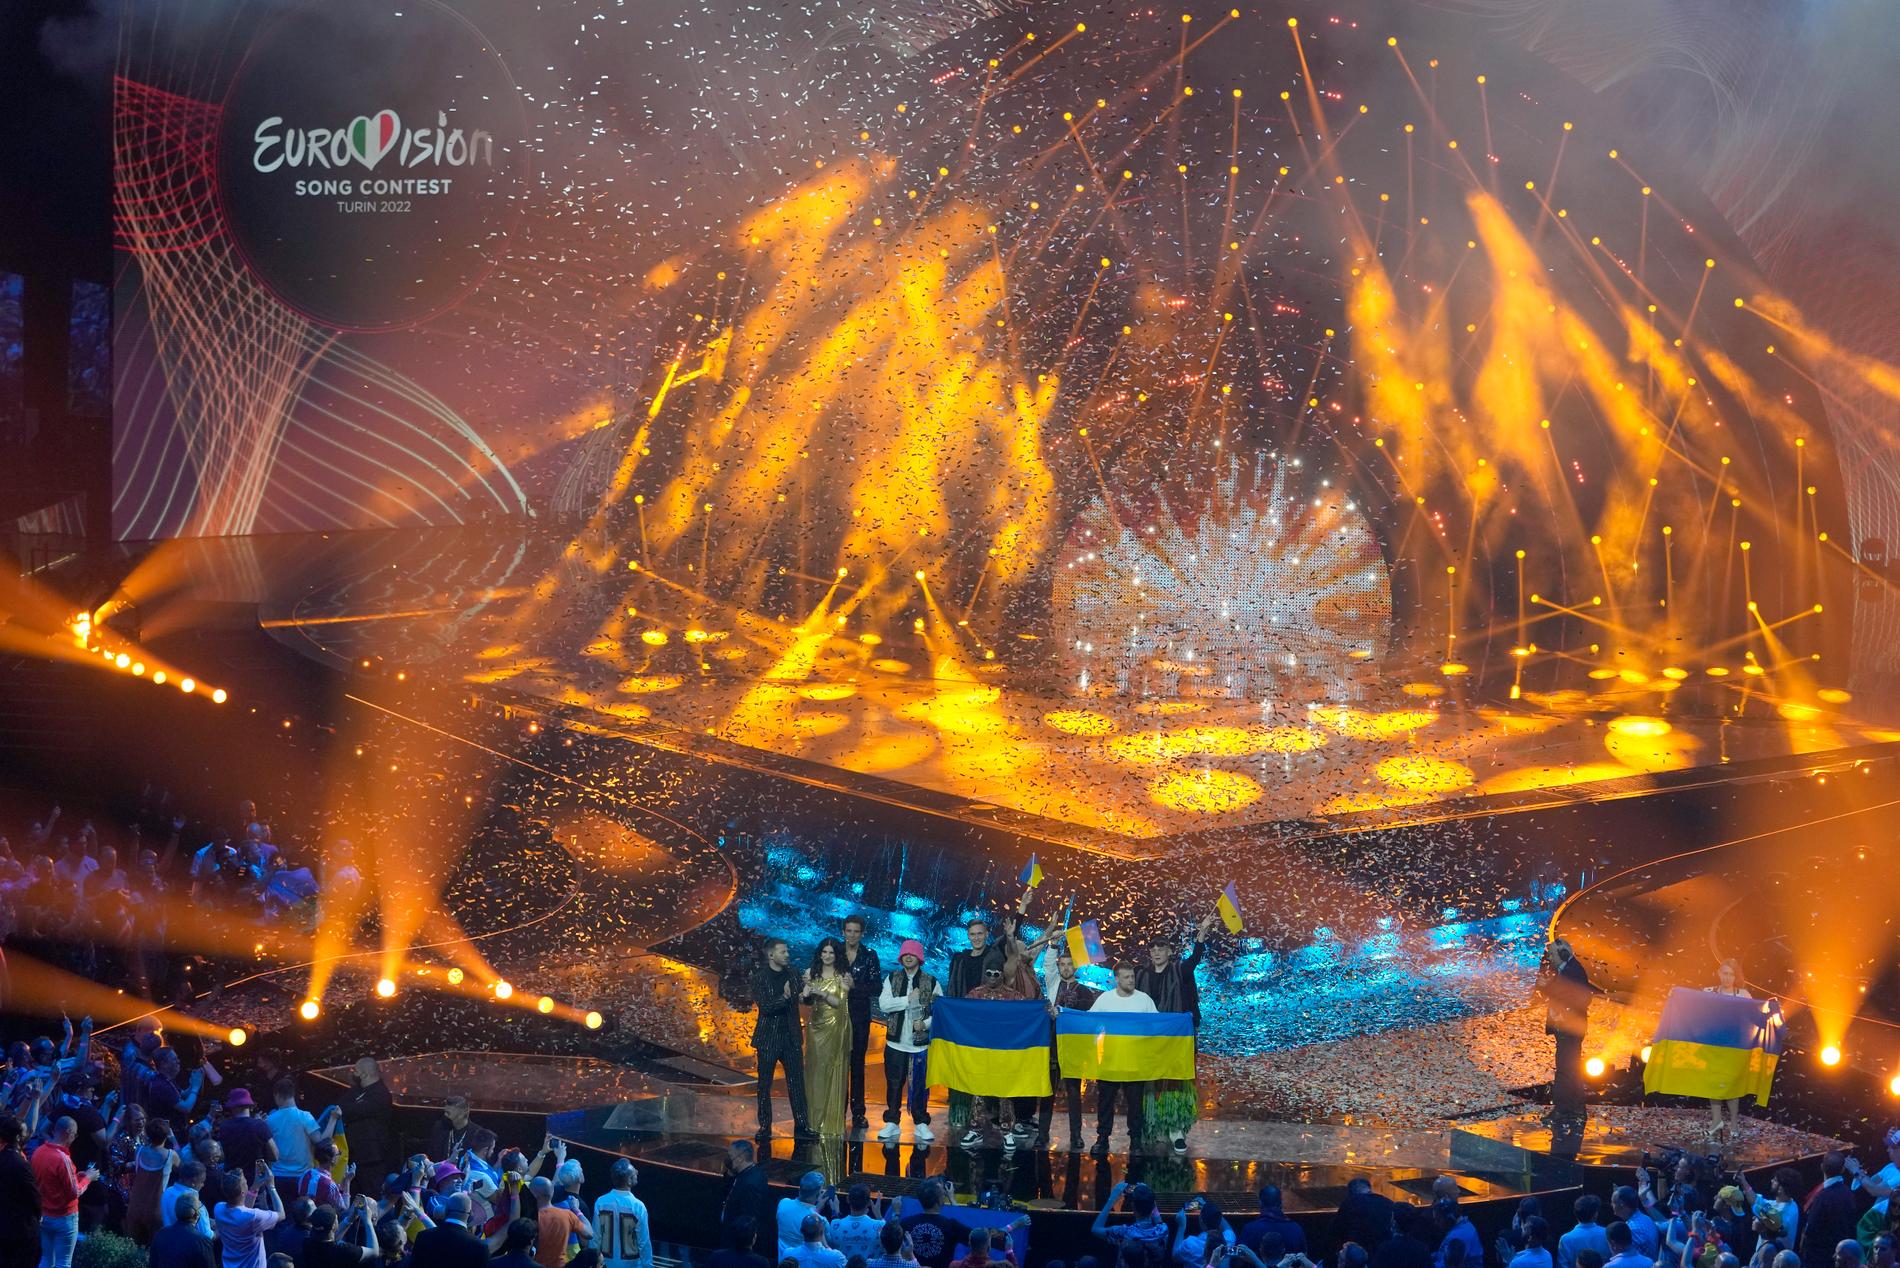 Ukraina vann Eurovision song contest 2022.